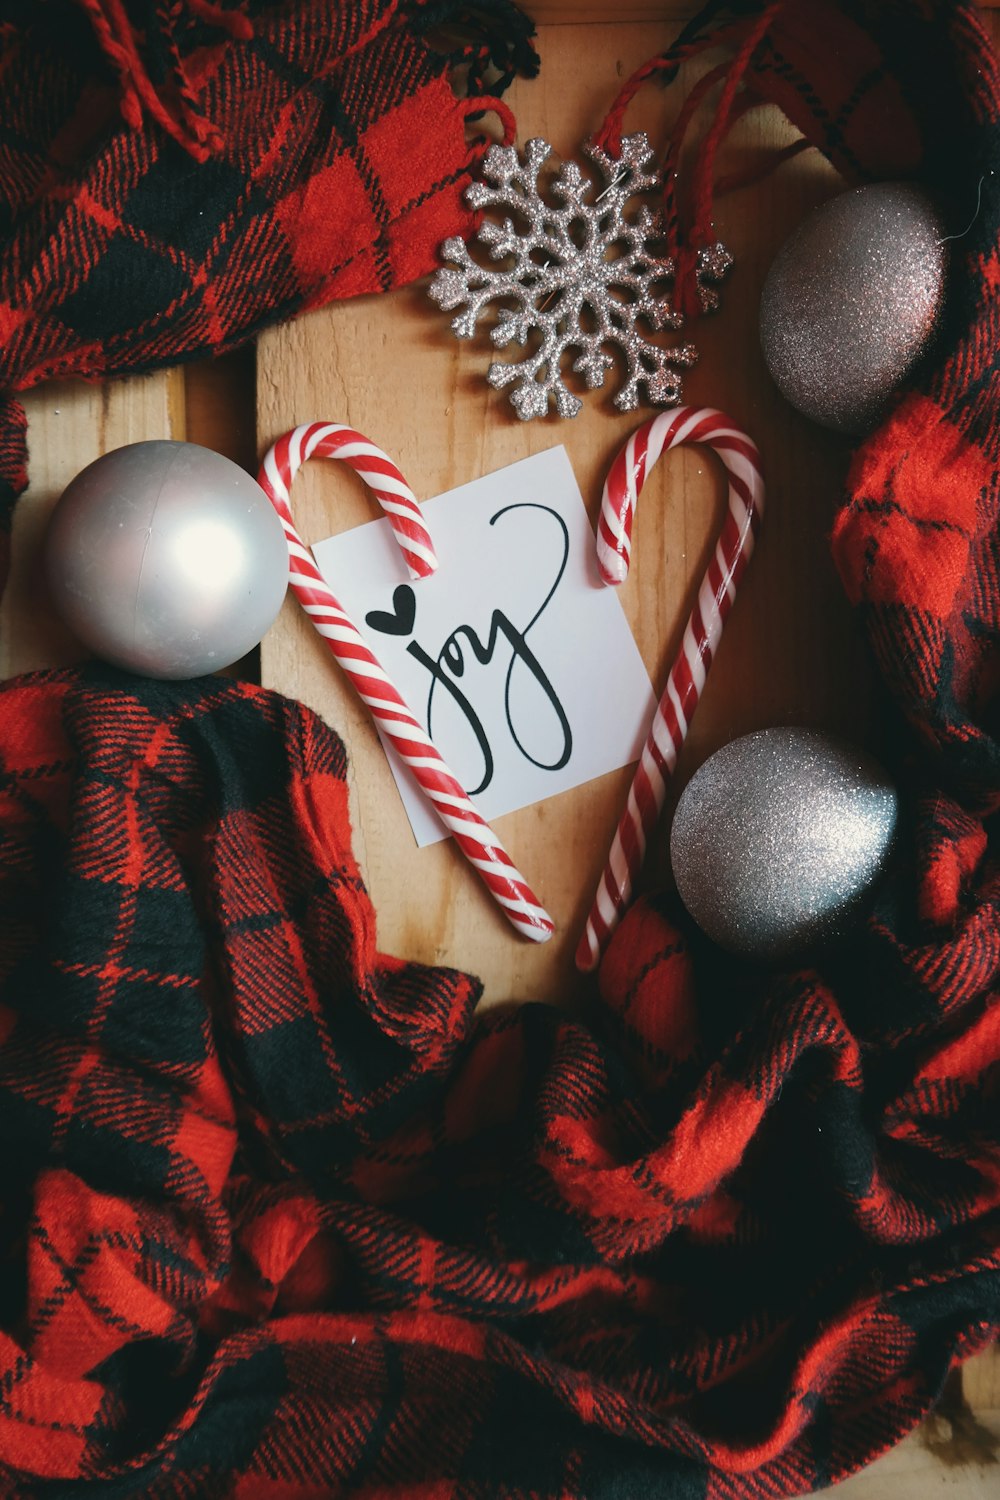 Un biglietto bianco che dice "Gioia", circondato da bastoncini di zucchero, ornamenti natalizi e materiale a quadri rosso.